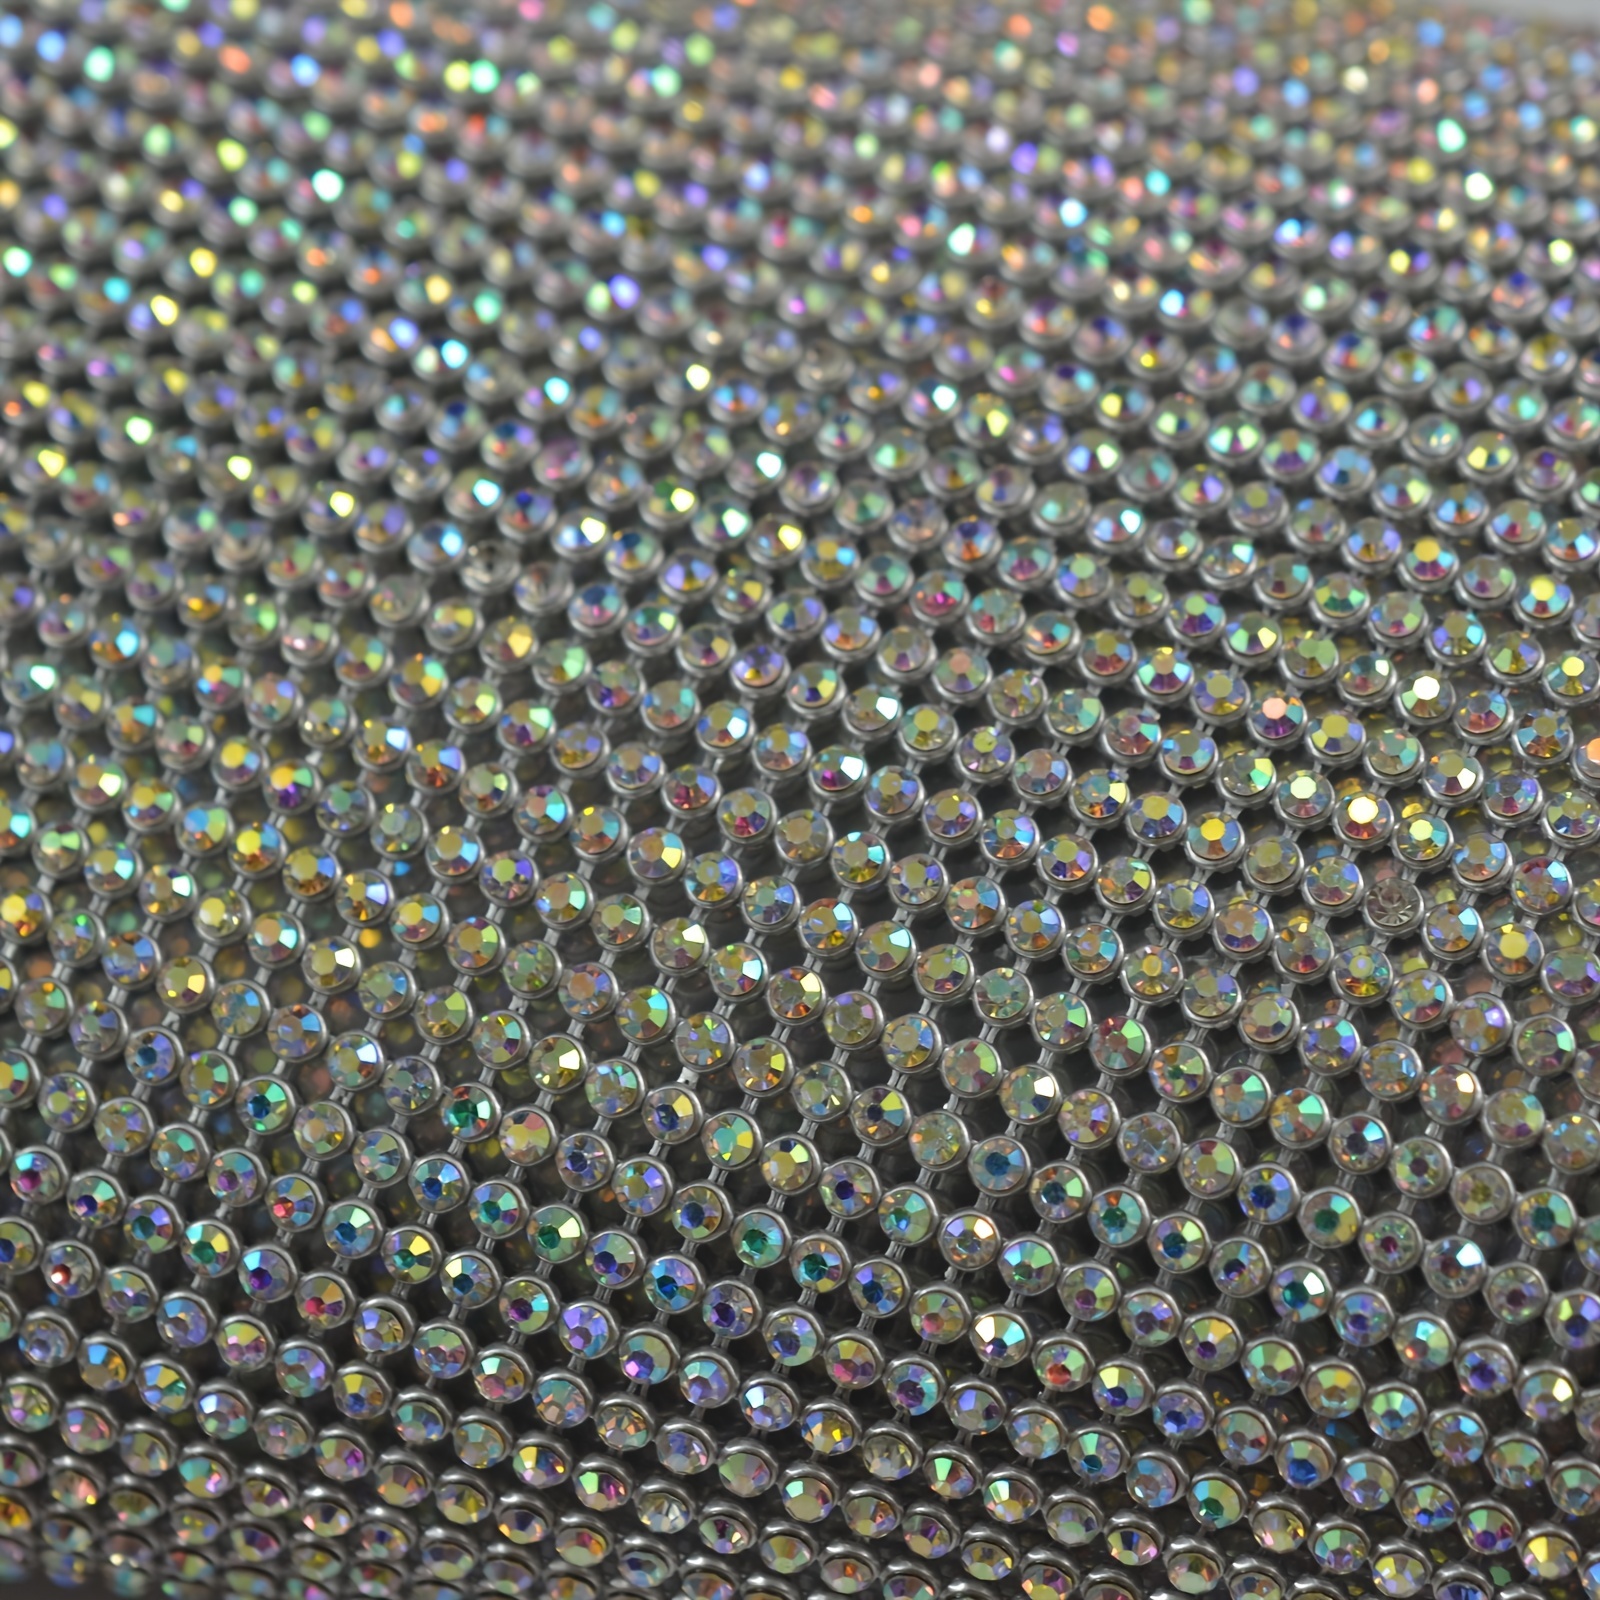  9x15 Inch SS12 Rhinestone Mesh Pearl Fabric-Rhinestones Mesh  Trim-Self Adhesive Rhinestones Mesh-Rhinestone Material Fabric-Strass Self  Adhesive Glass Crystal Rhinestone for Craft Decoration Sewing